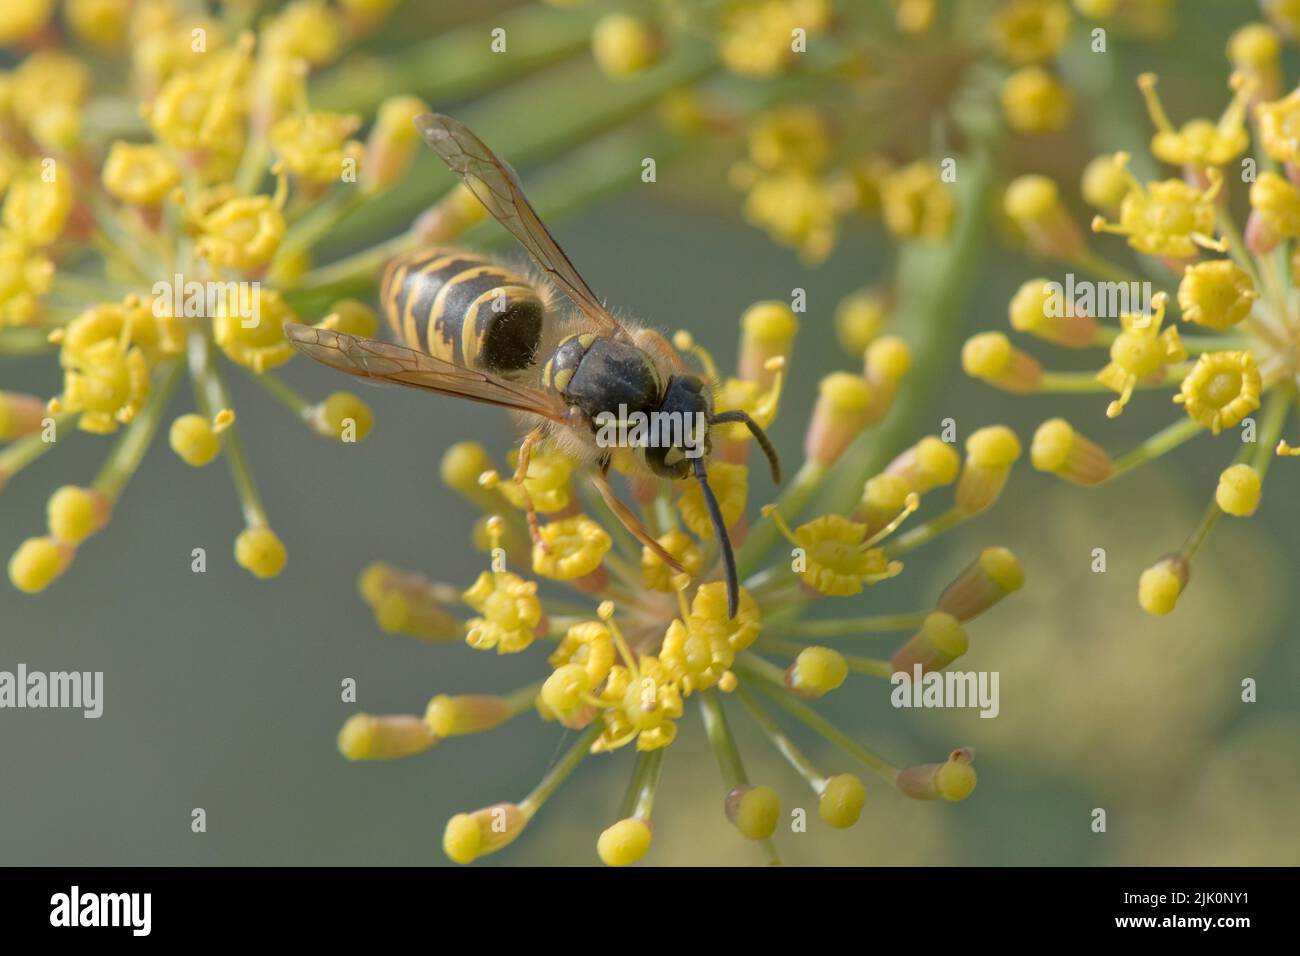 La guêpe commune (Vespula vulgaris) pollinisateur pollinisant des fleurs jaunes de fenouil (Foenicule vulgare) sur l'ombelle d'une herbe de jardin, Berkshire, juillet Banque D'Images